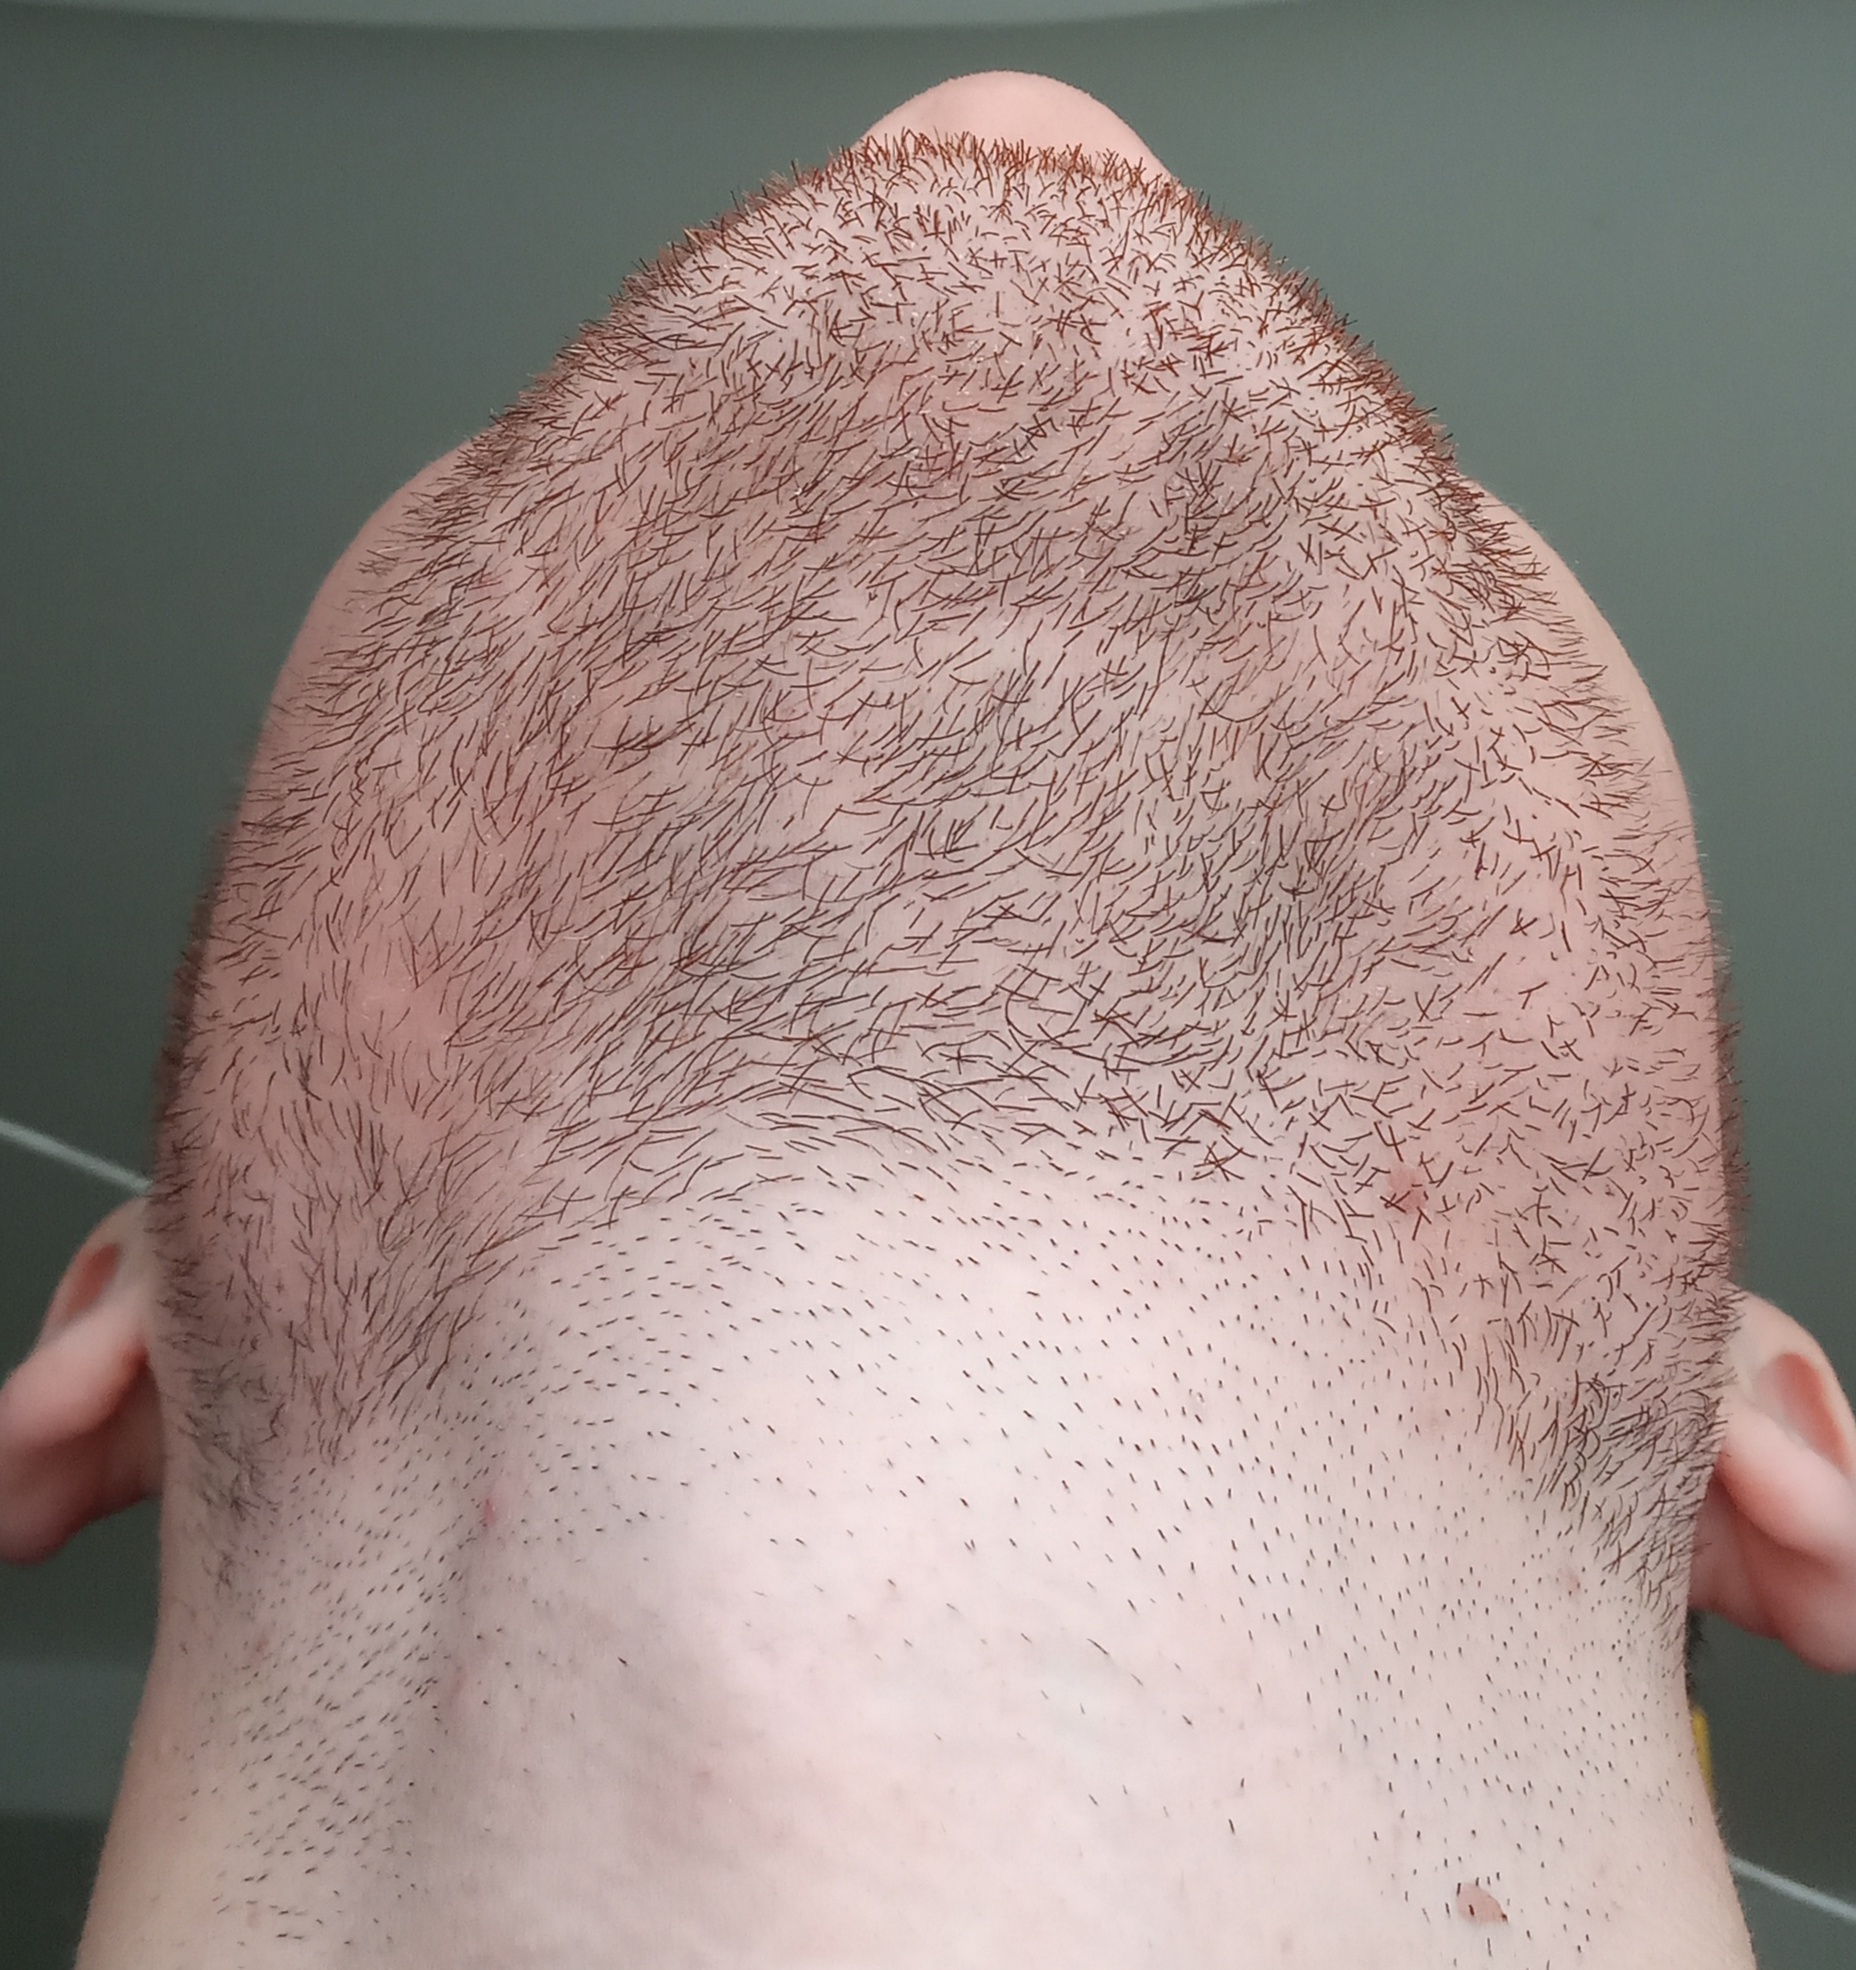 Можно ли пересадить волосы с бороды на голову